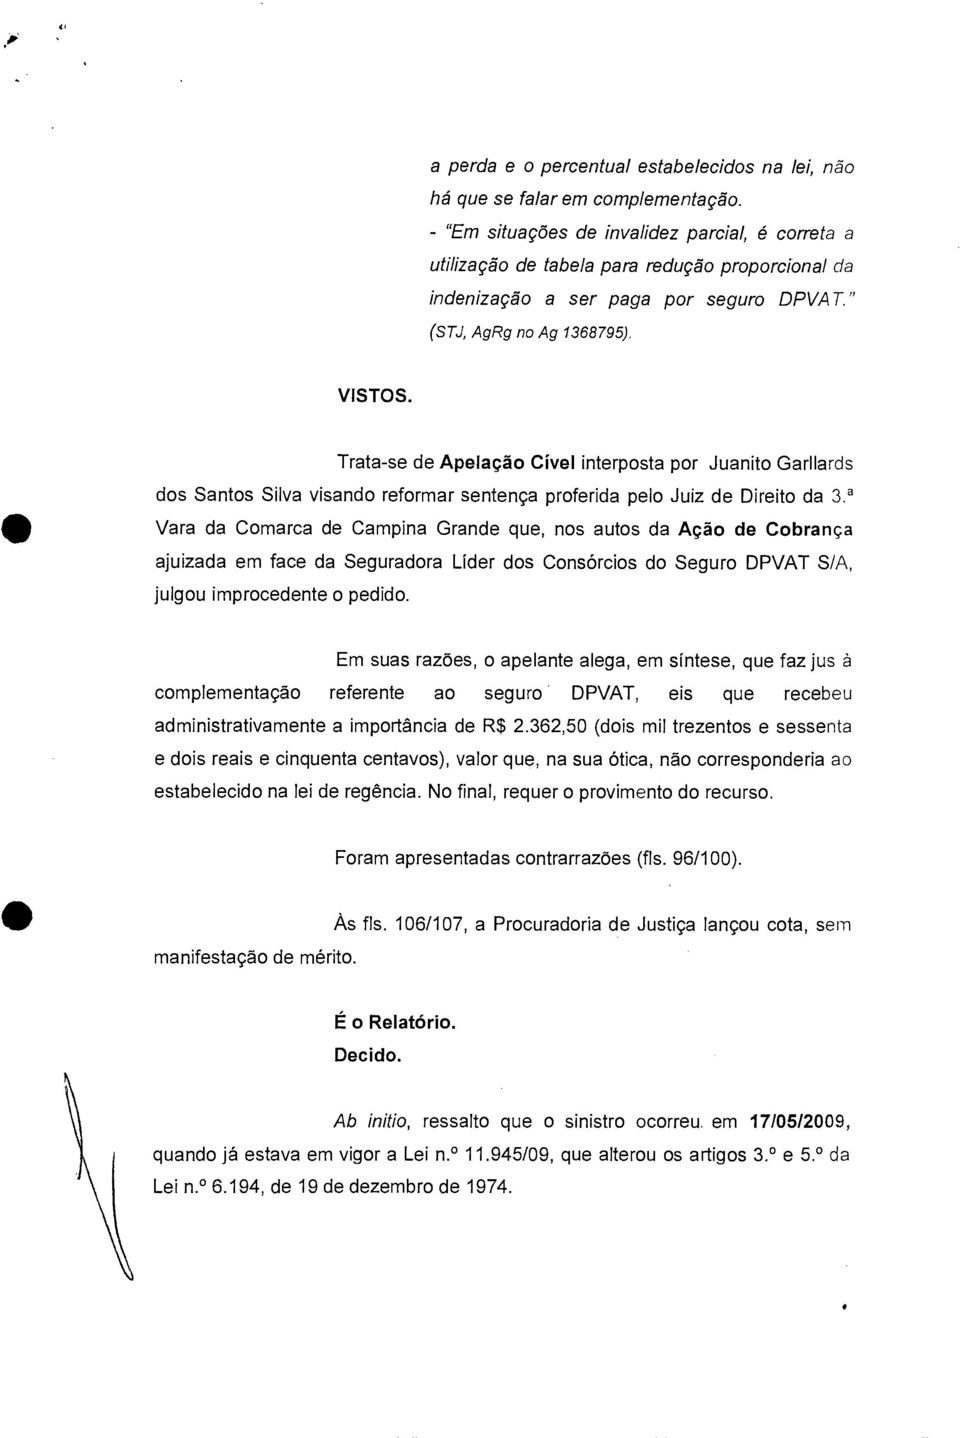 Trata-se de Apelação Chiei interposta por Juanito Garllards dos Santos Silva visando reformar sentença proferida pelo Juiz de Direito da 3.